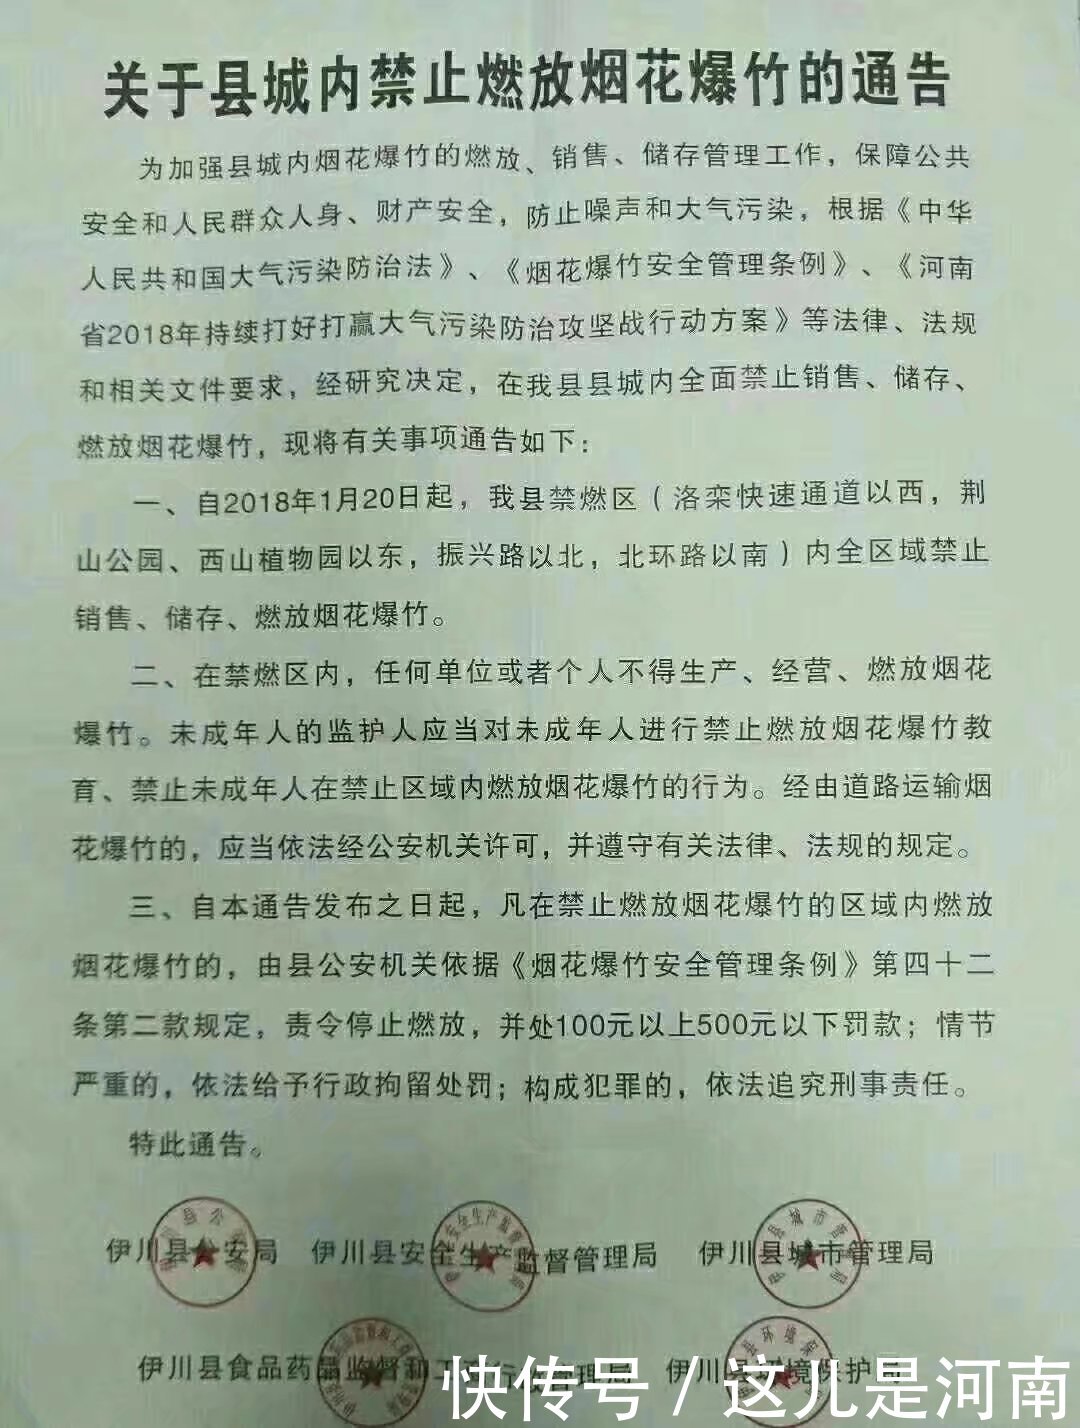 河南伊川:关于县城内禁止燃放烟花爆竹的通告